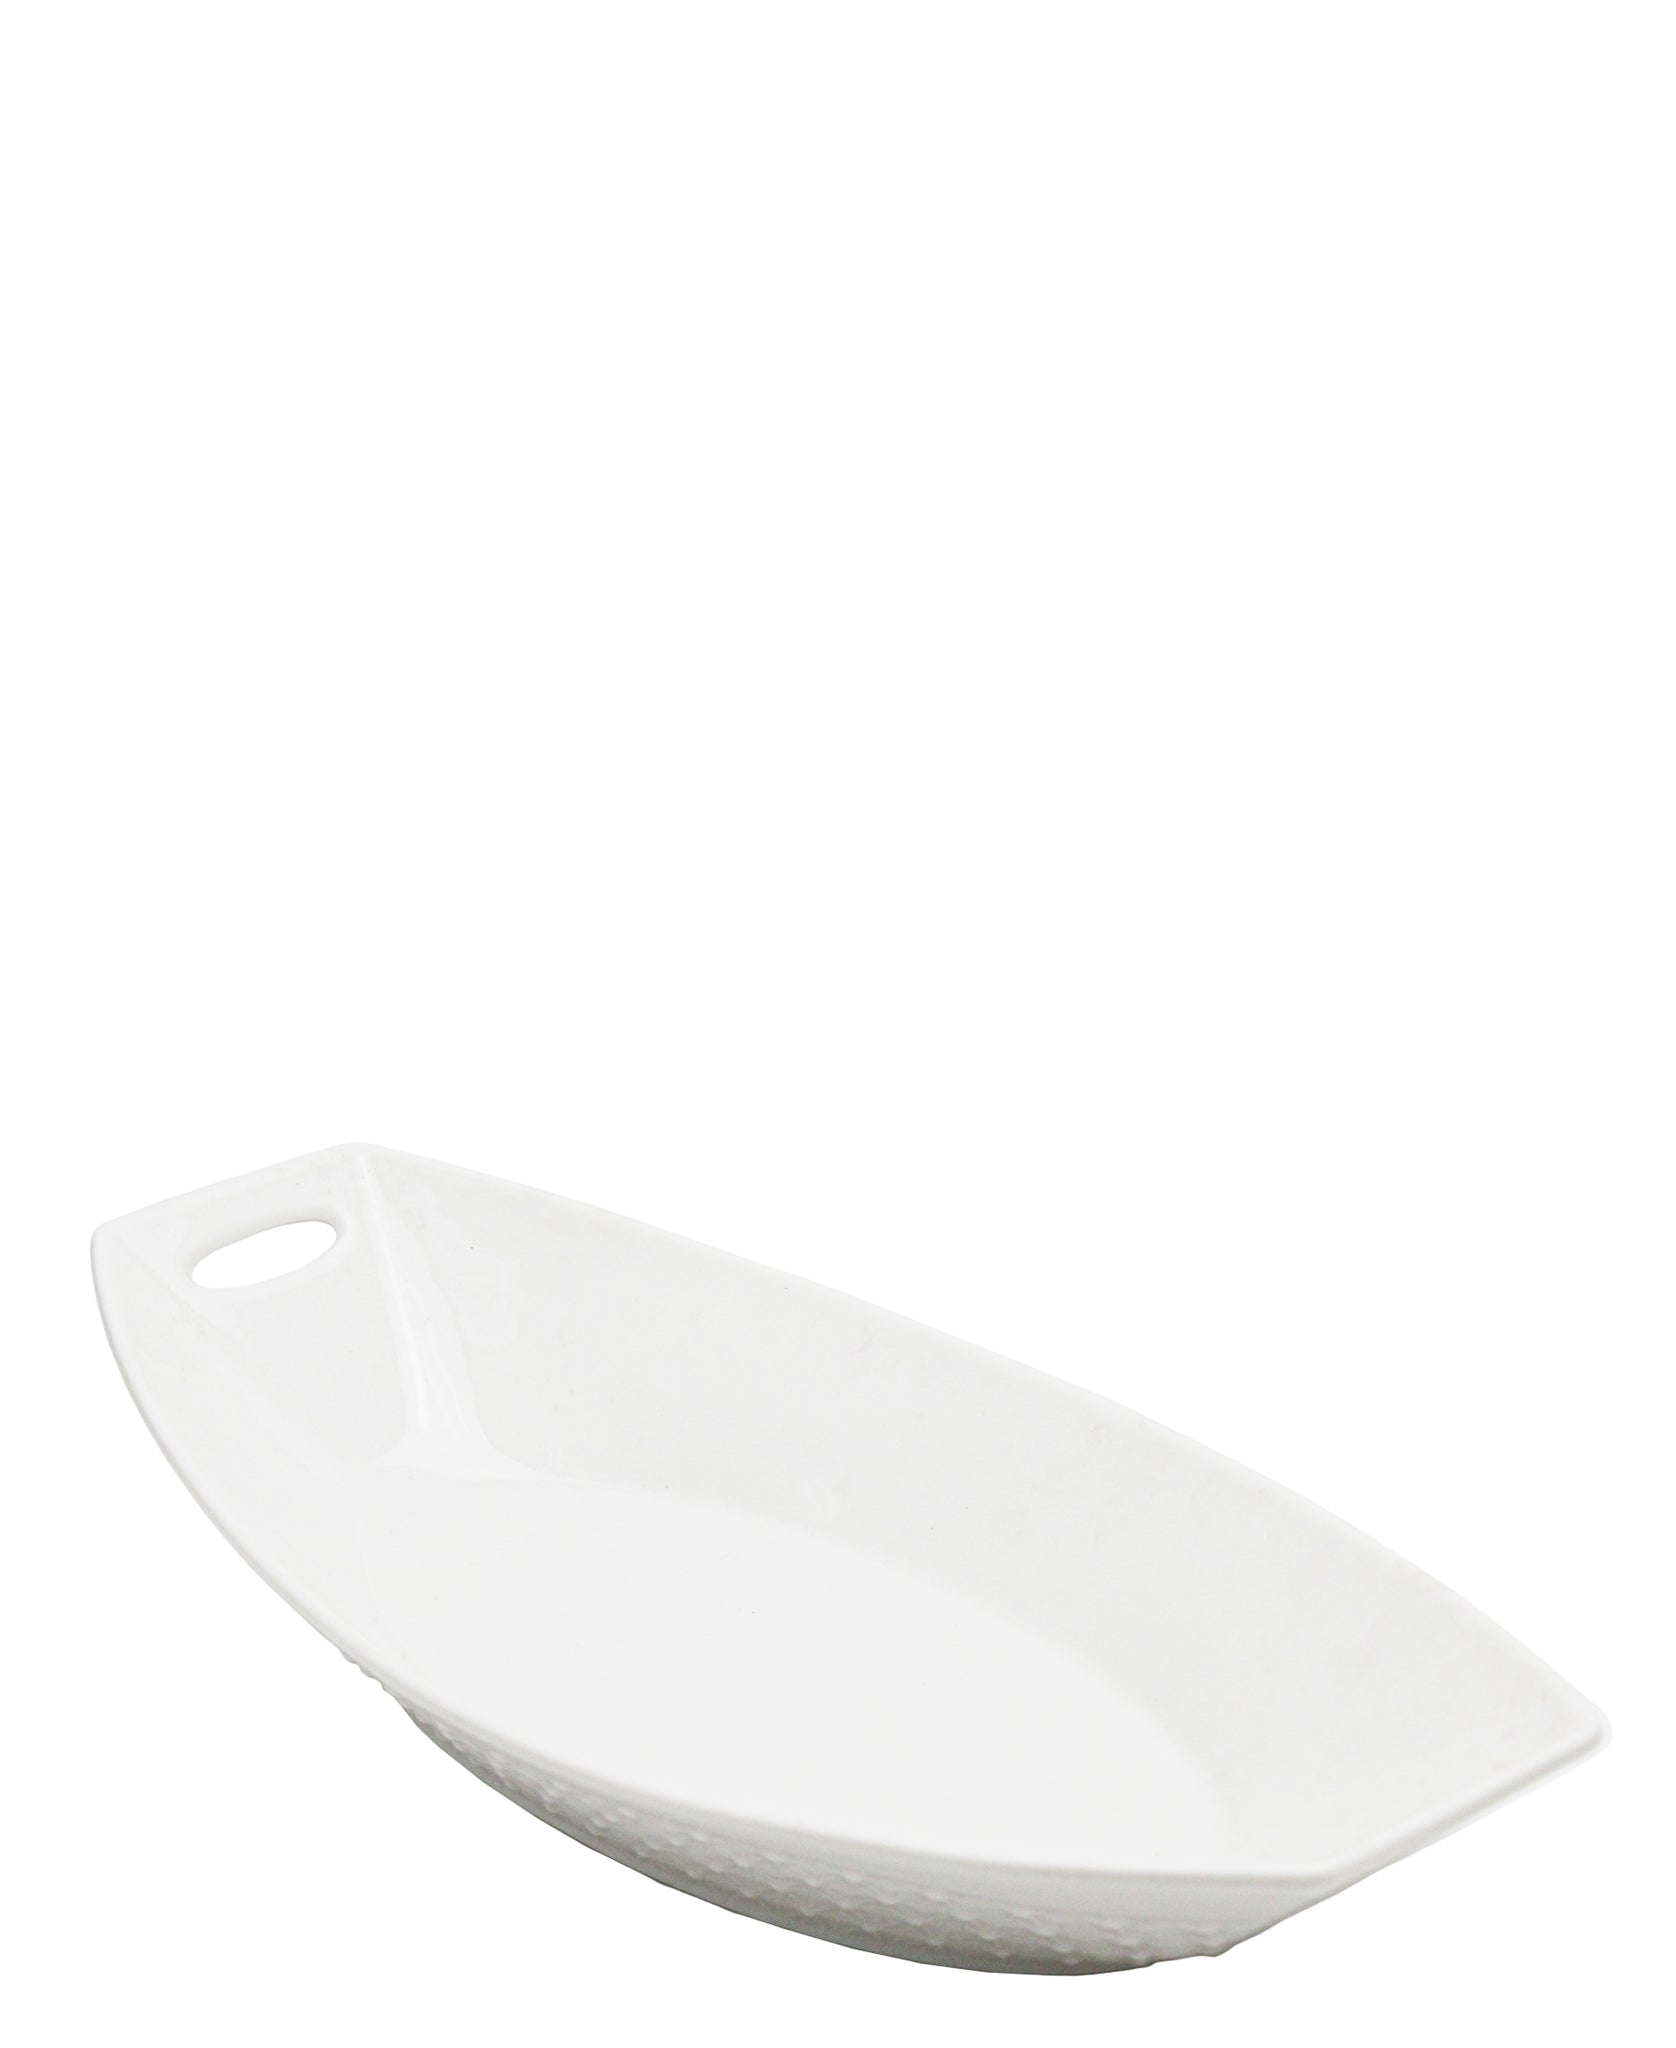 Twilight Ceramic Serving Platter White